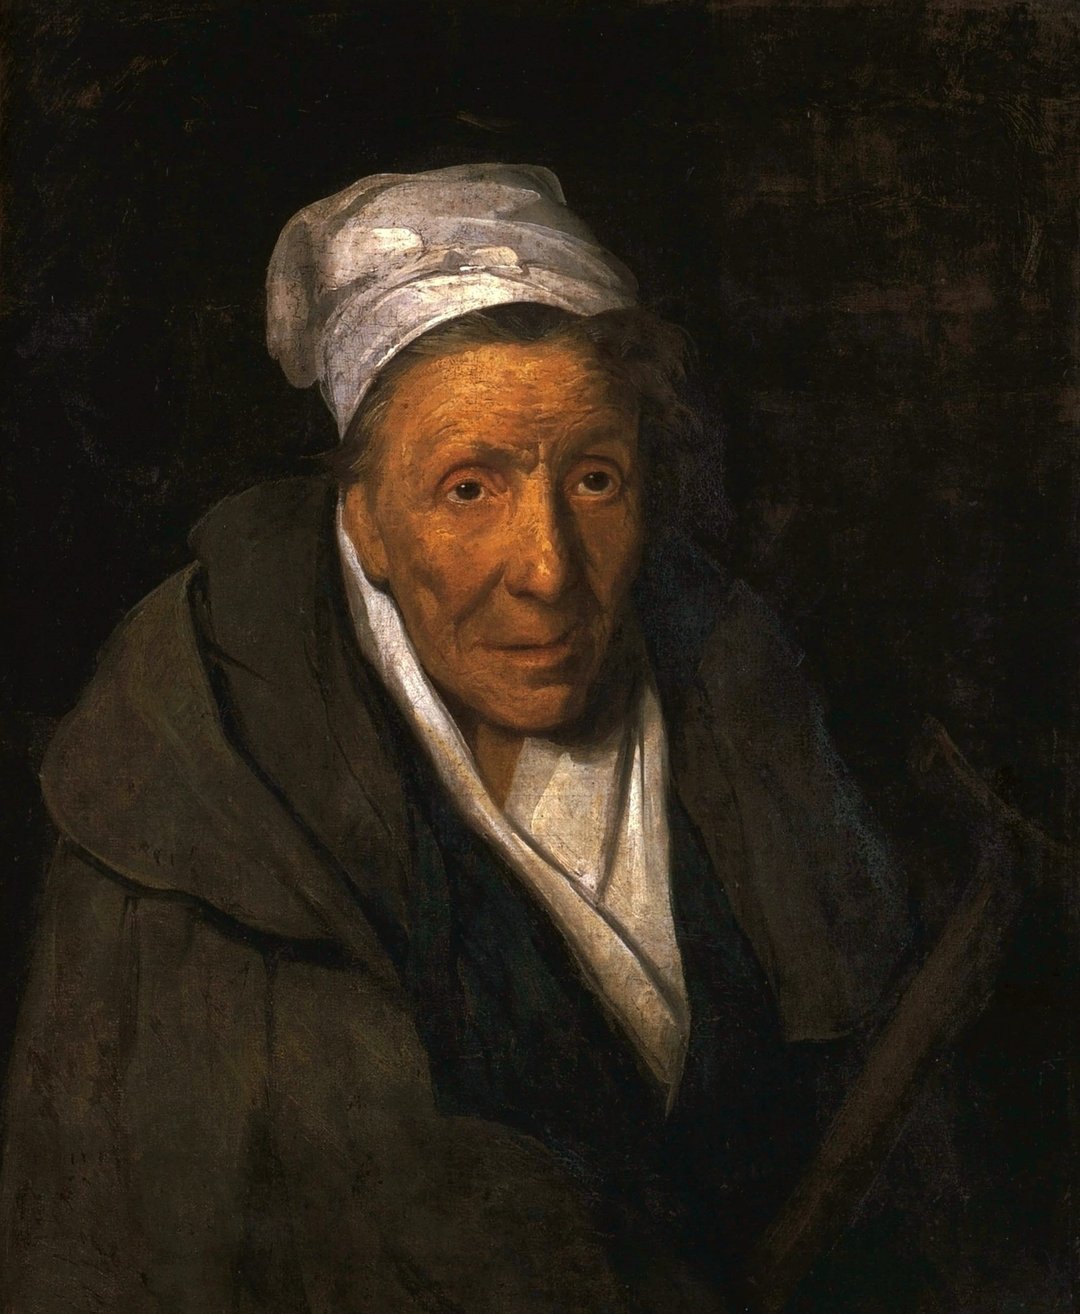 Une femme folle et une joueuse compulsive - Théodore Géricault